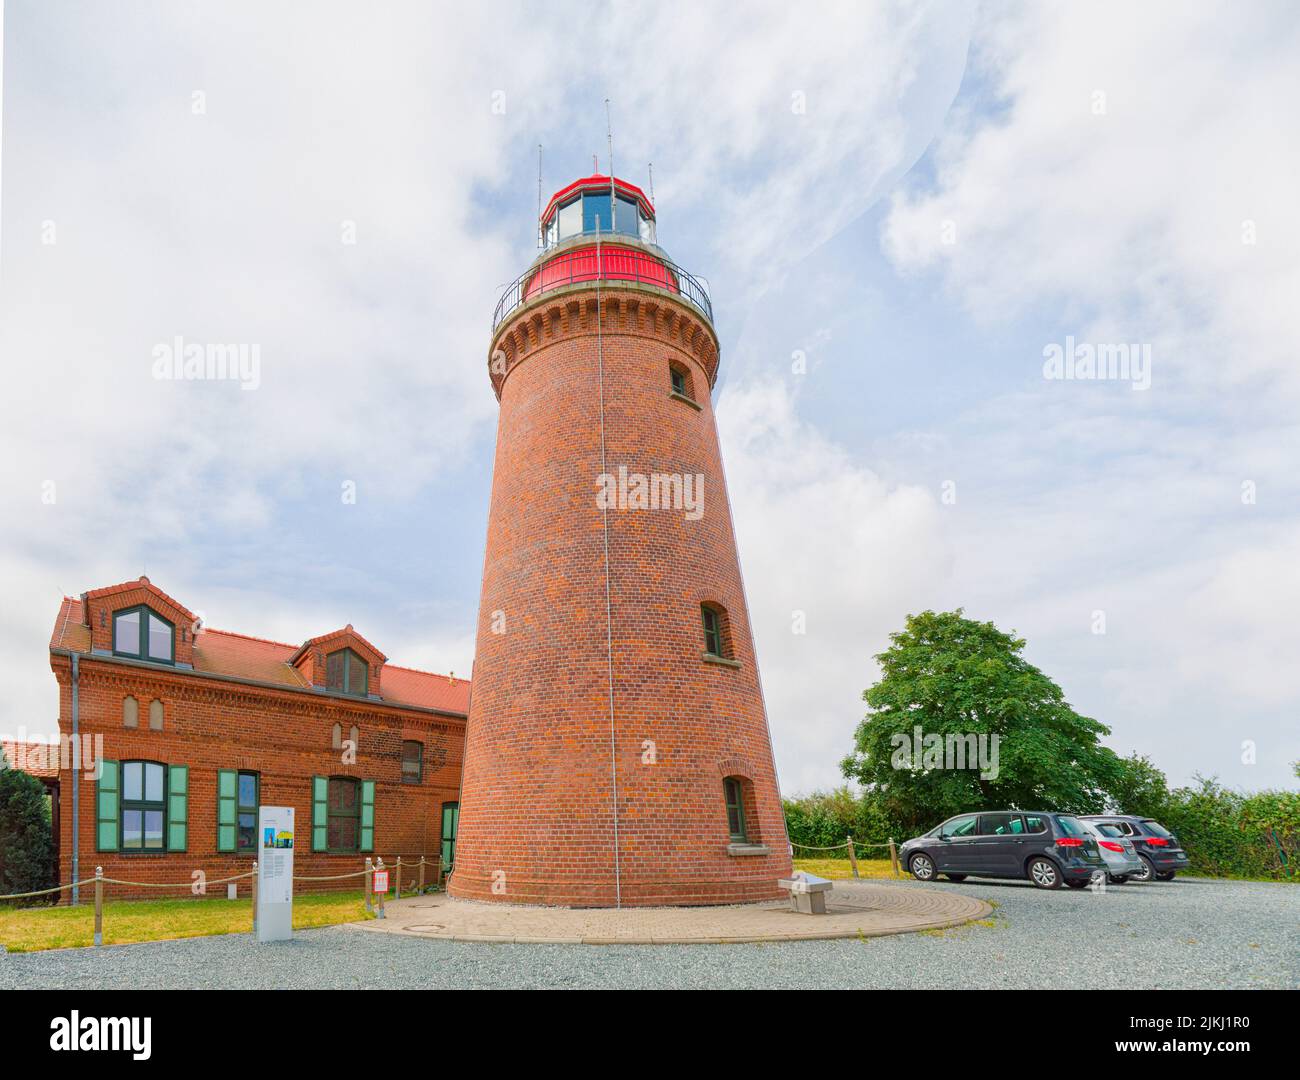 The Bastorf Lighthouse - Lighthouse Buk, Mecklenburg-Western Pomerania, Germany Stock Photo